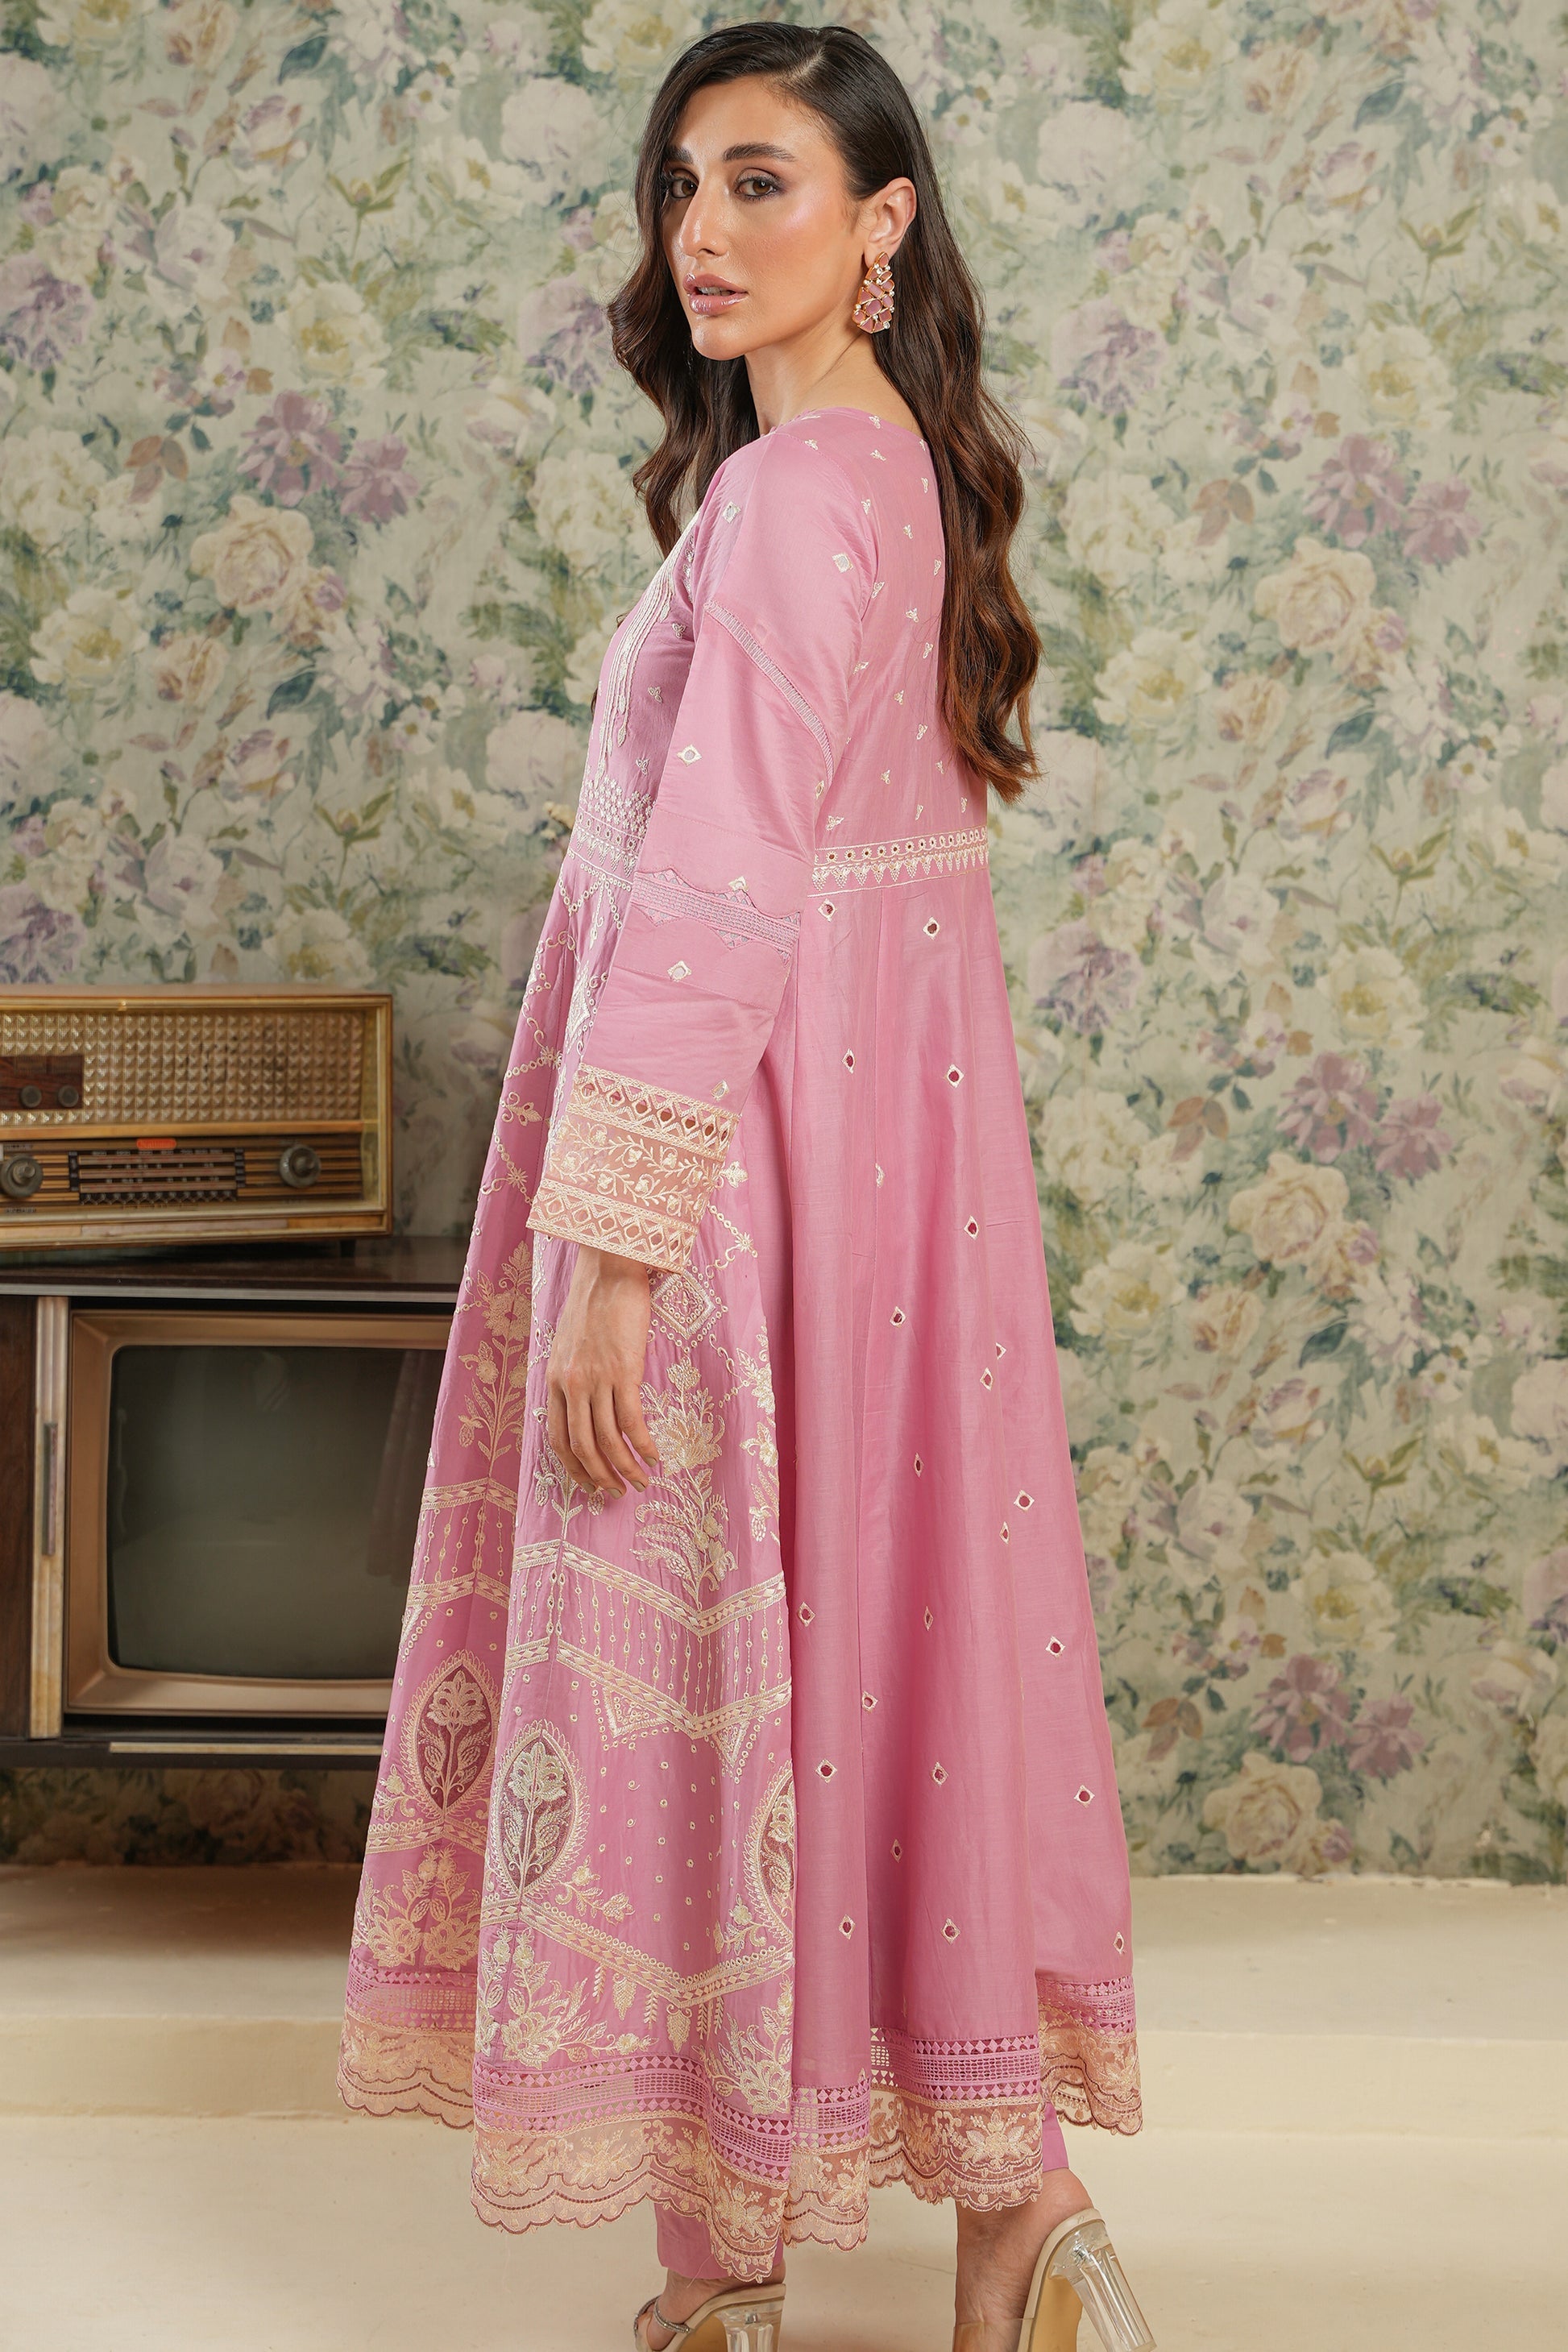 Shop Now - Gazania - Neelum - Eid Edit 2023 - Gisele - Shahana Collection UK - Wedding and Bridal Party Dresses